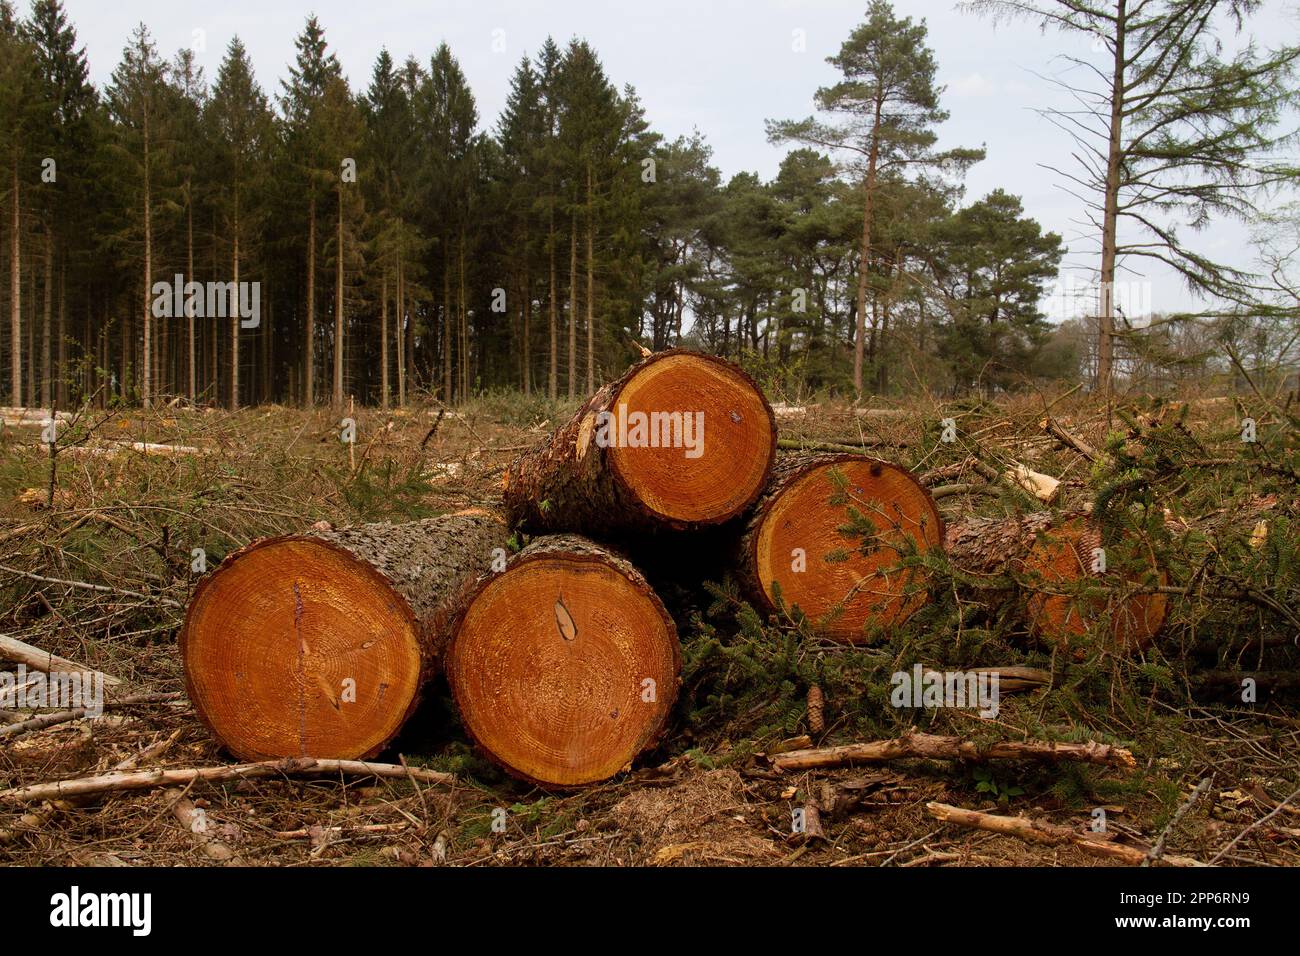 Waldbewirtschaftung: Fällebene in einem Wald, Stapel Baumstämme im Vordergrund Stockfoto